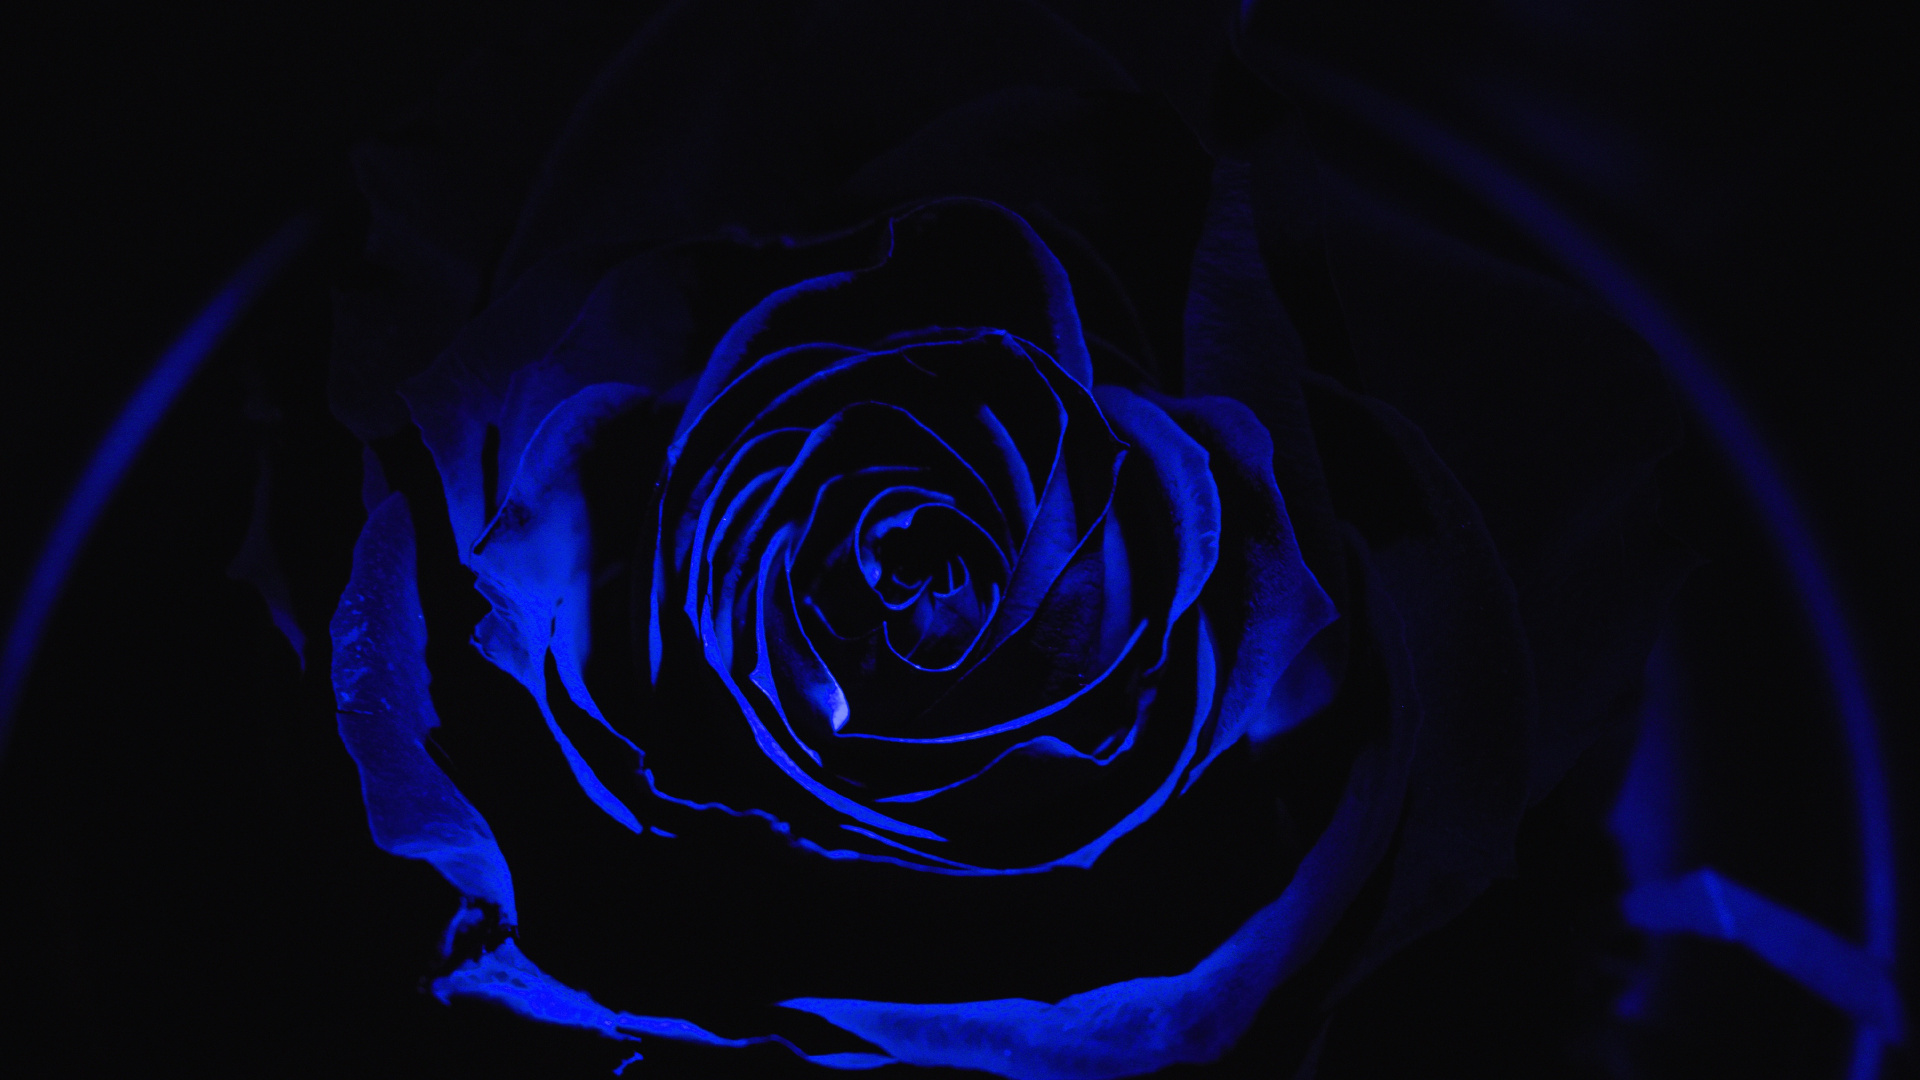 Rosa Azul en Fotografía de Cerca. Wallpaper in 1920x1080 Resolution